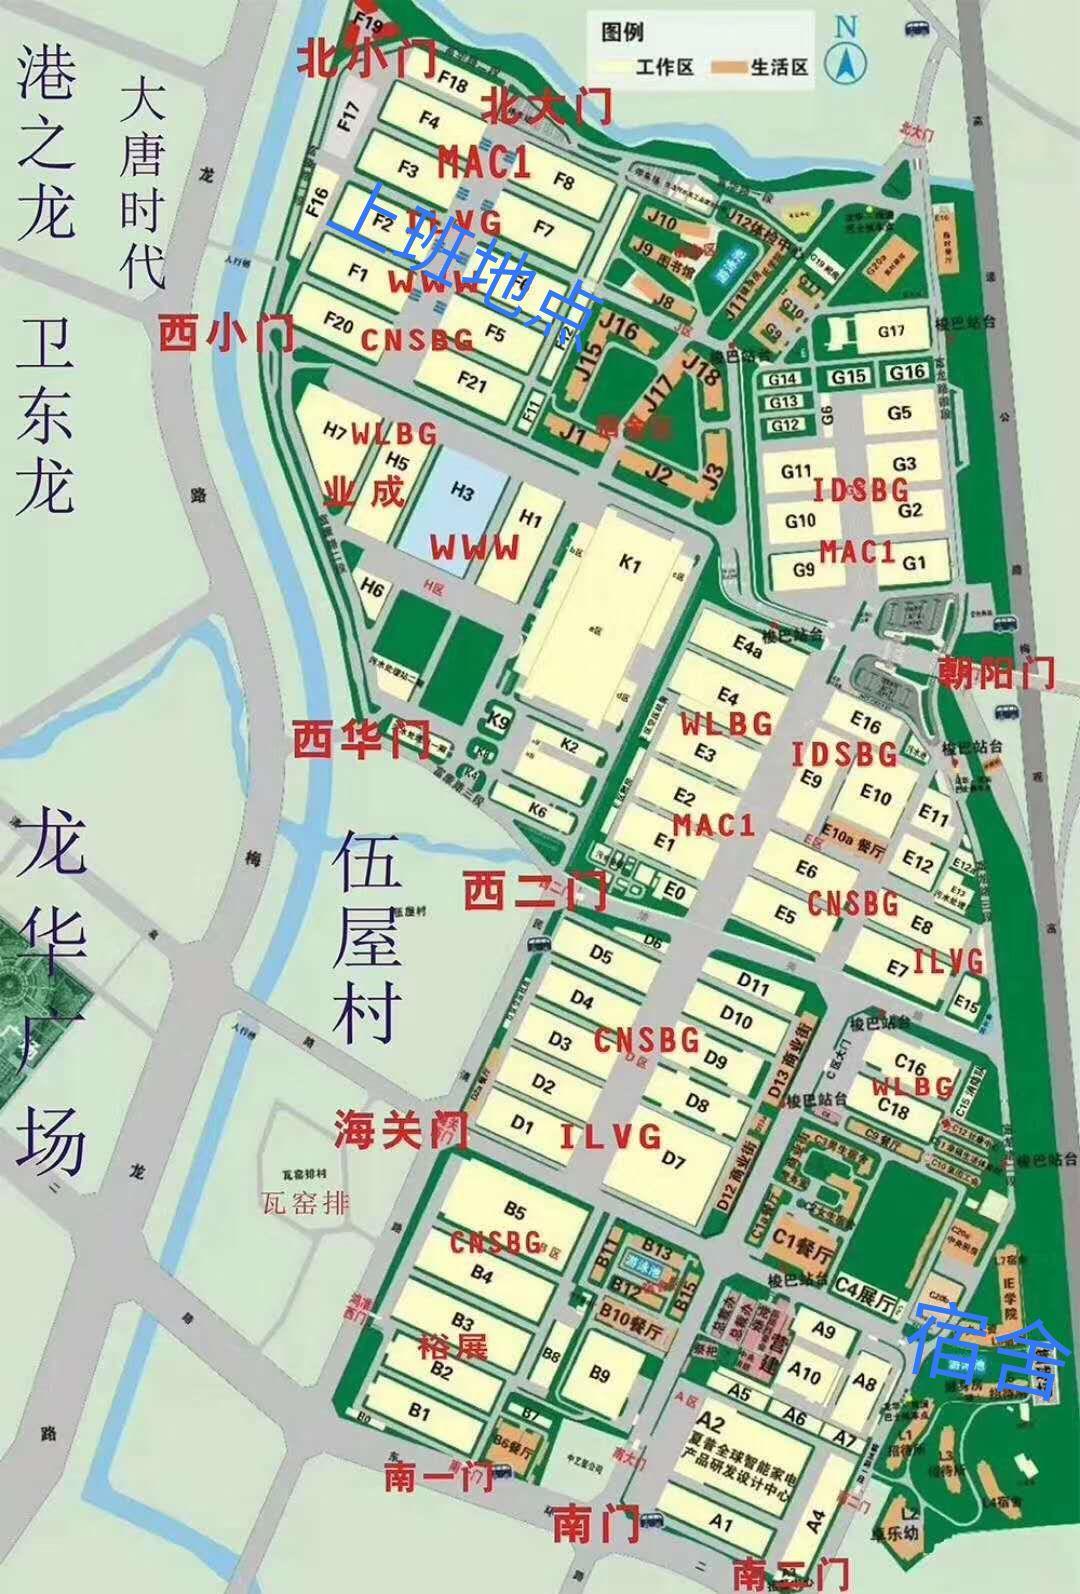 烟台富士康厂区平面图图片